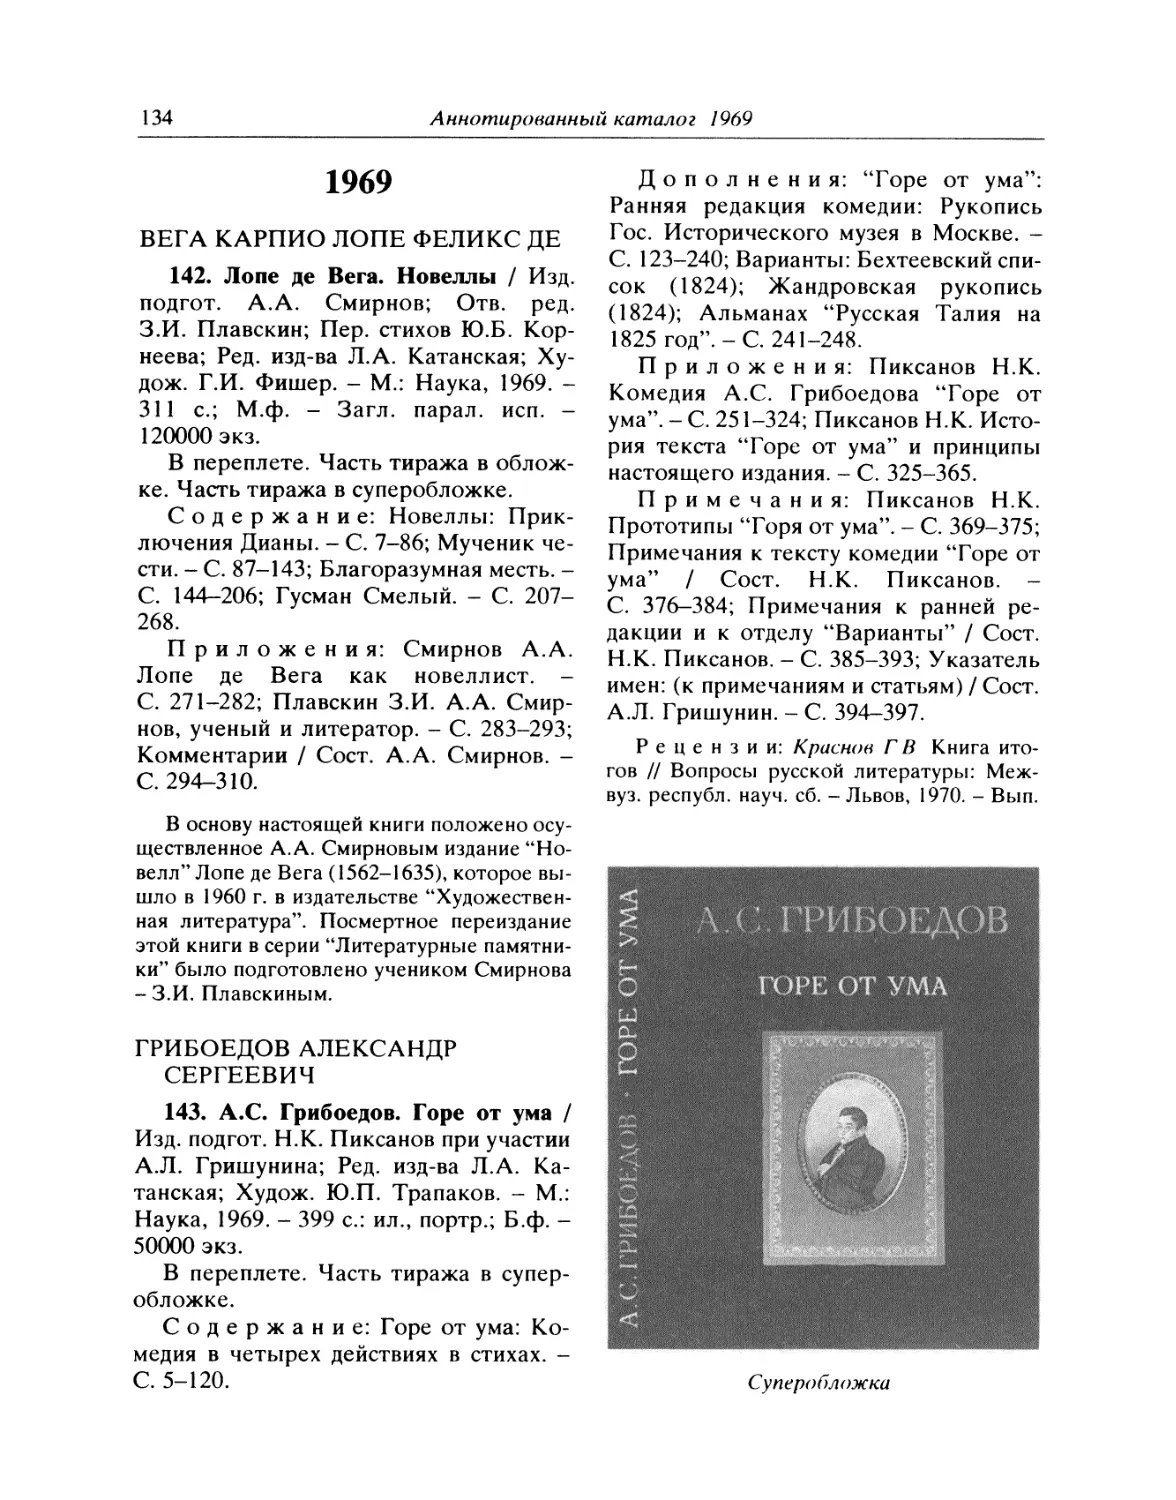 1969
143. А.С. Грибоедов. Горе от ума